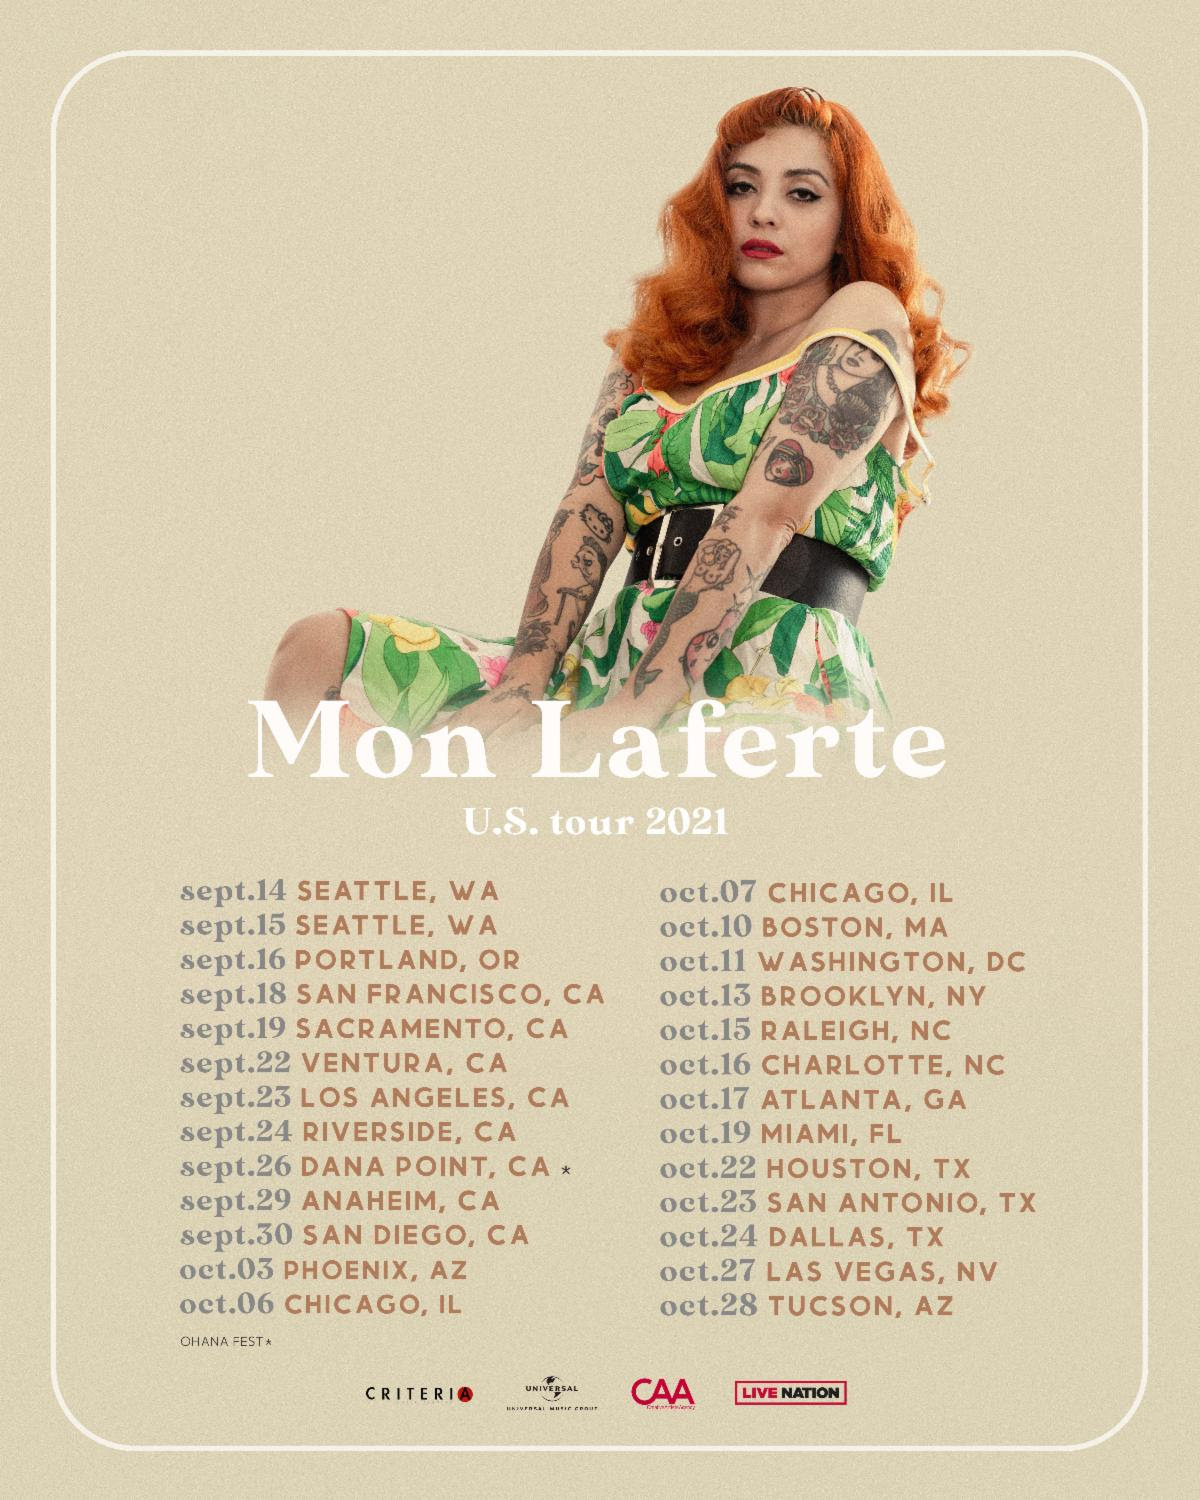 Mon Laferte Announces Her U.S. Tour